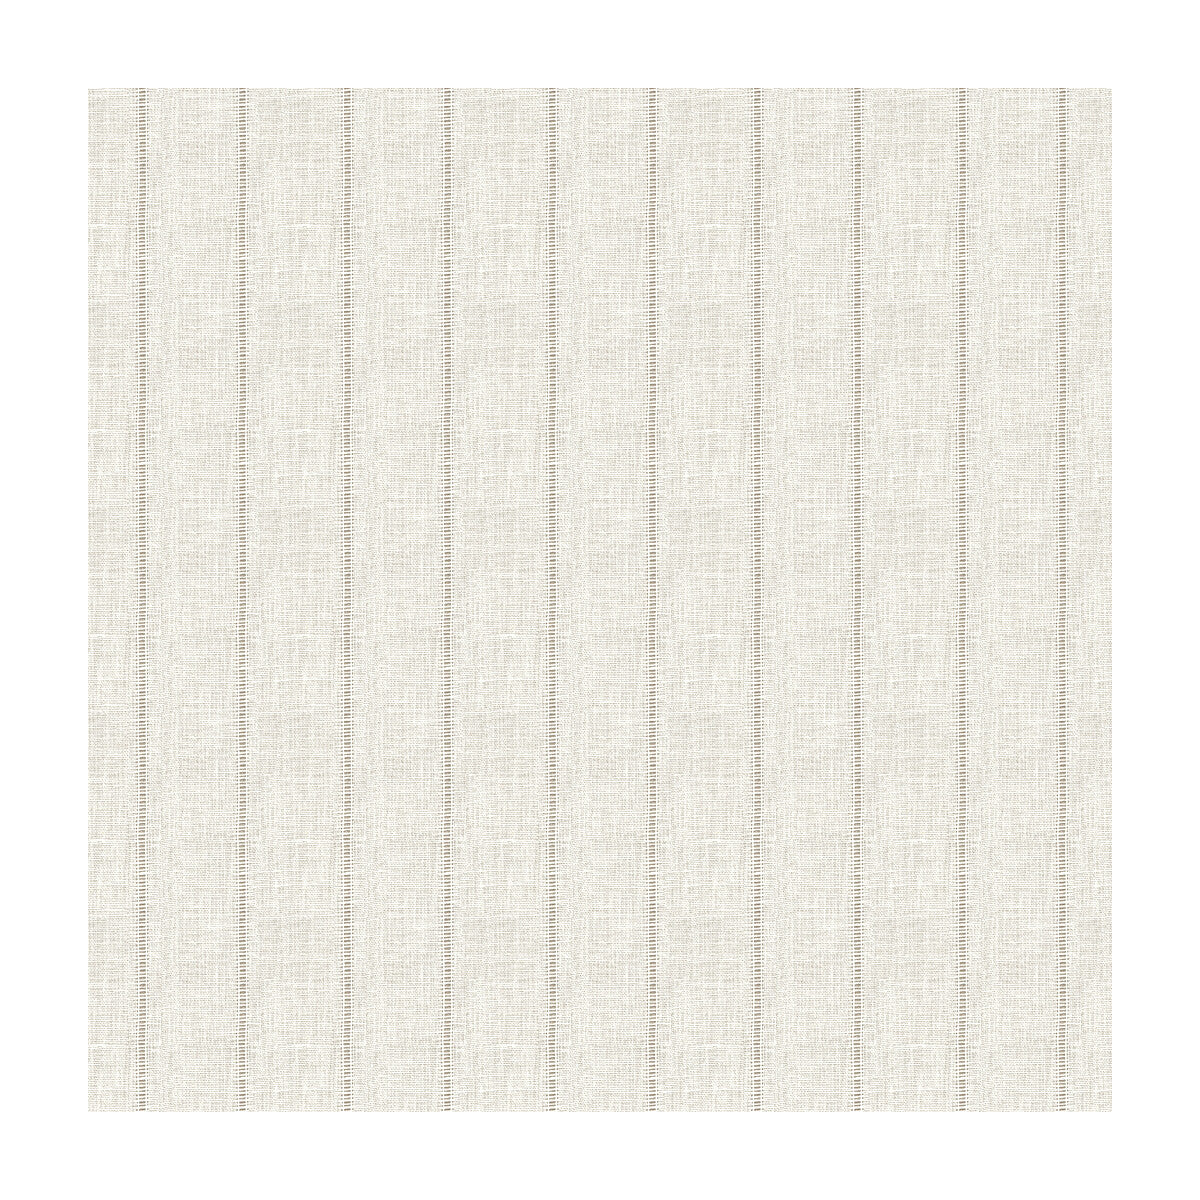 Kravet Basics fabric in 4064-1 color - pattern 4064.1.0 - by Kravet Basics